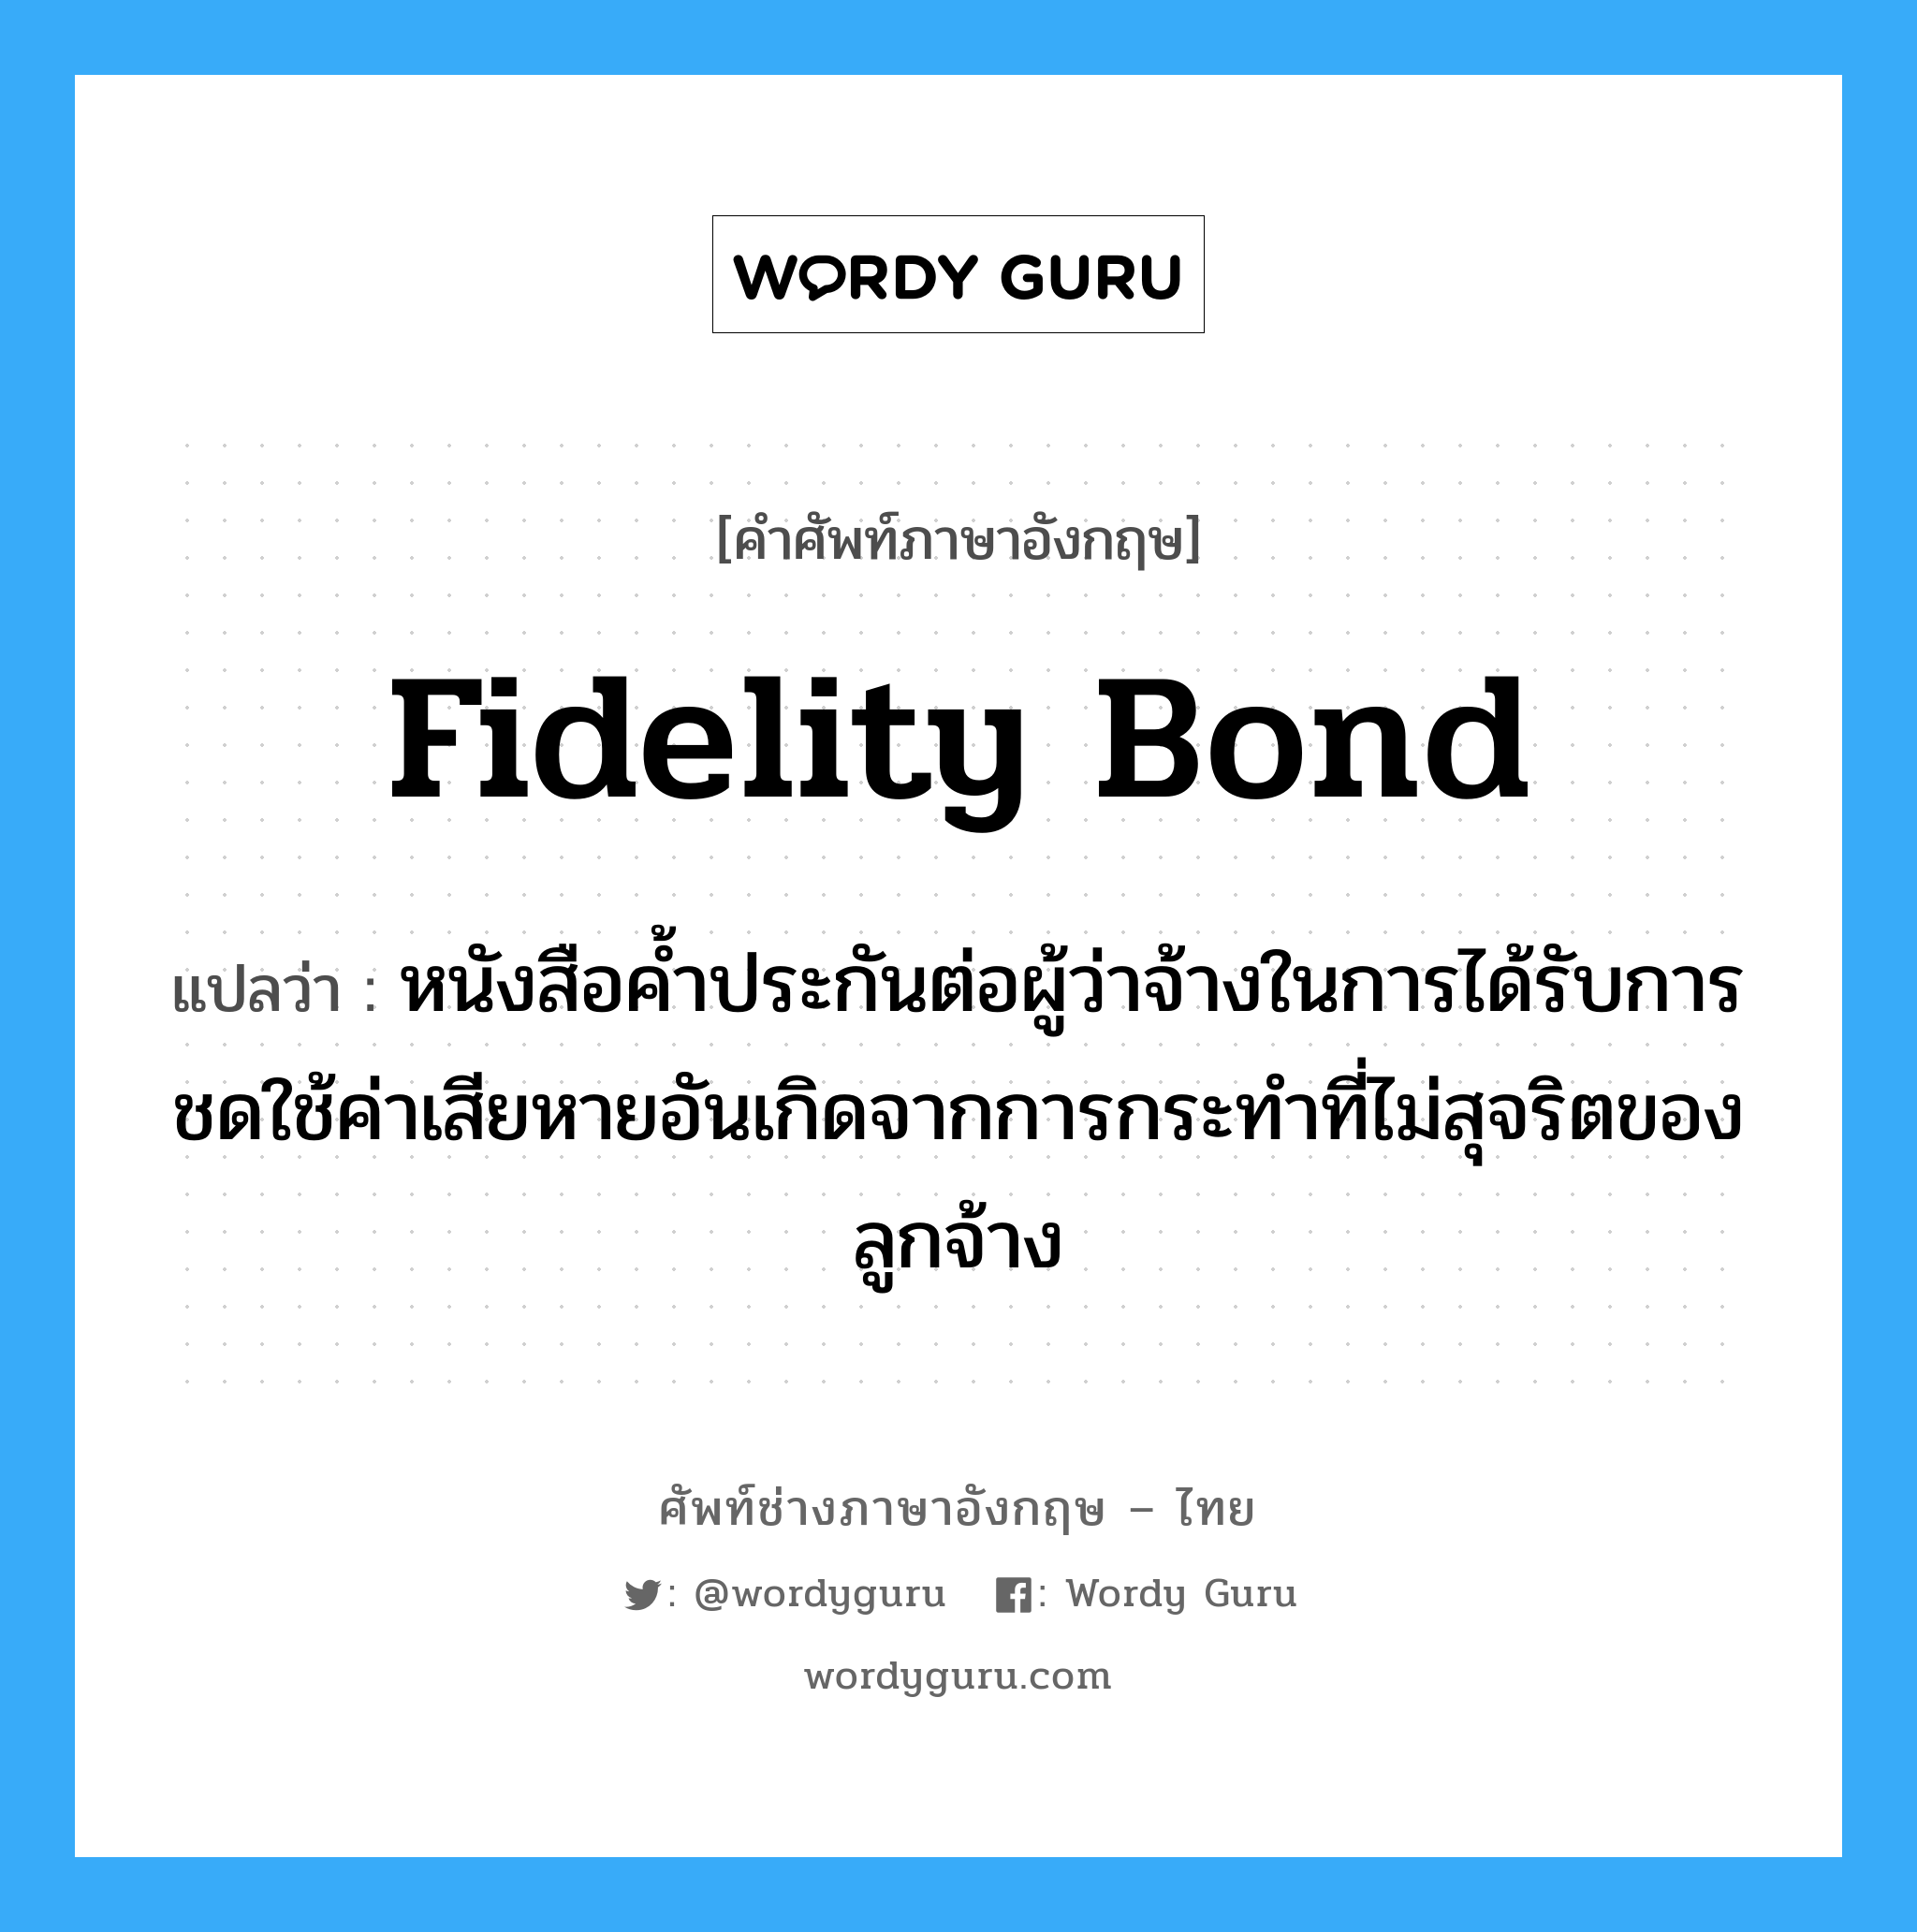 Fidelity Bond แปลว่า?, คำศัพท์ช่างภาษาอังกฤษ - ไทย Fidelity Bond คำศัพท์ภาษาอังกฤษ Fidelity Bond แปลว่า หนังสือค้ำประกันต่อผู้ว่าจ้างในการได้รับการชดใช้ค่าเสียหายอันเกิดจากการกระทำที่ไม่สุจริตของลูกจ้าง